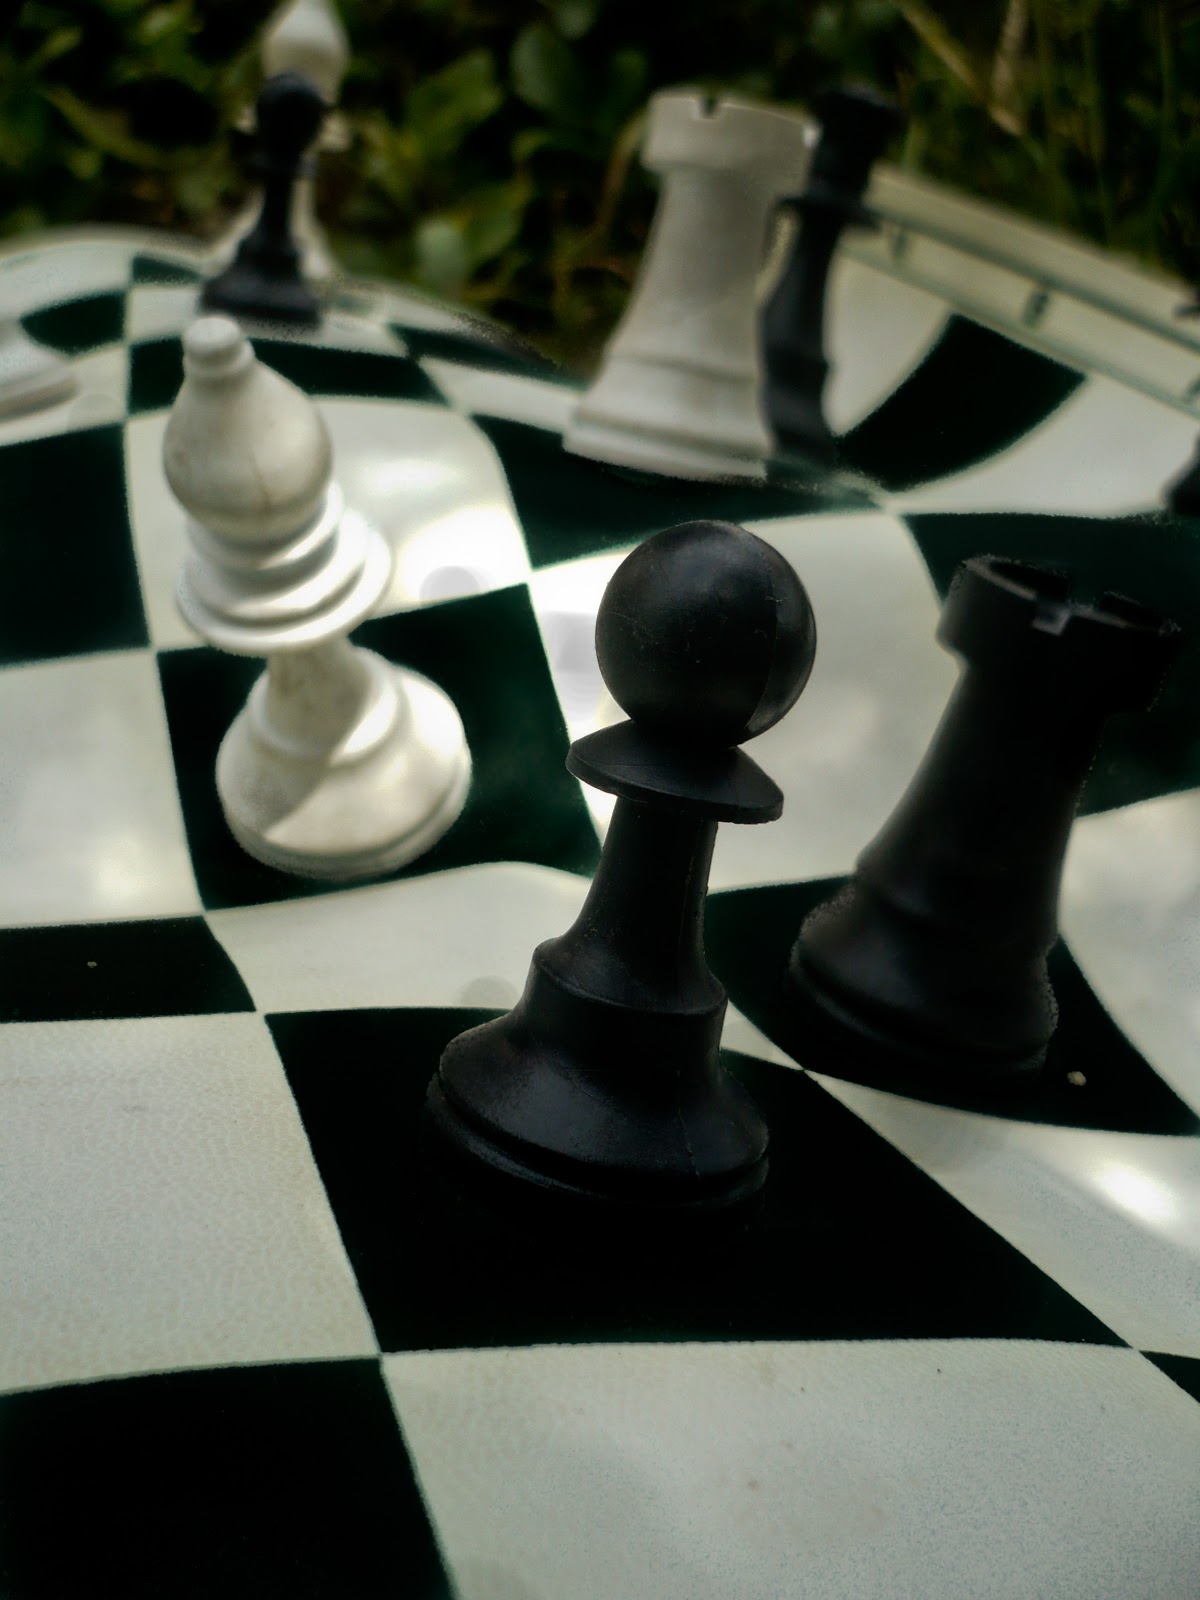 Aula04 - O valor das peças no xadrez a importância do centro do  desenvolvimento e dos tempos 